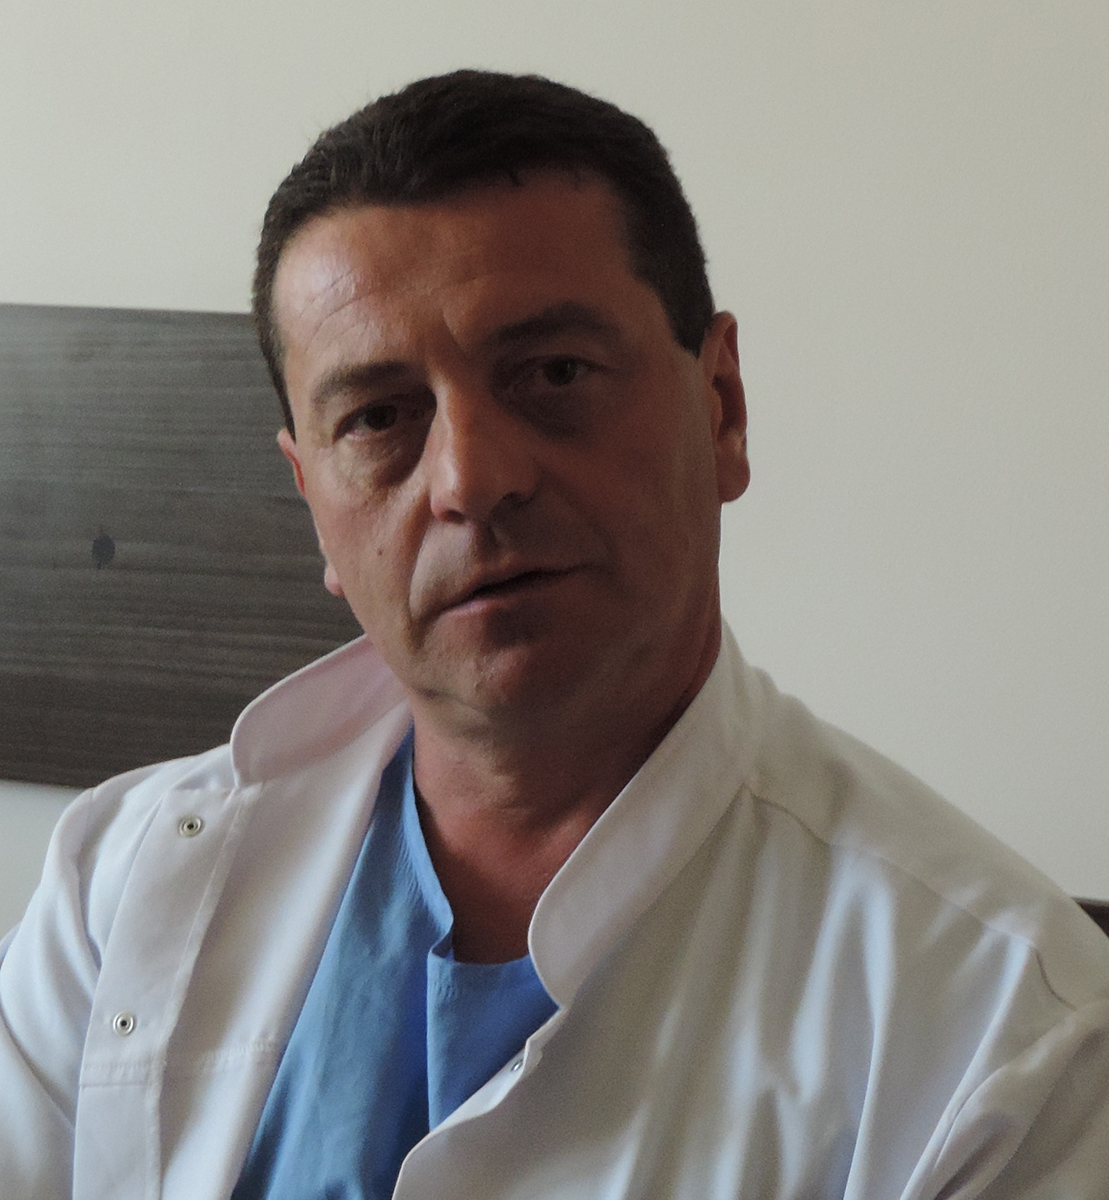 Уникална за България съдова операция беше извършена в Университетска болница „Софиямед“